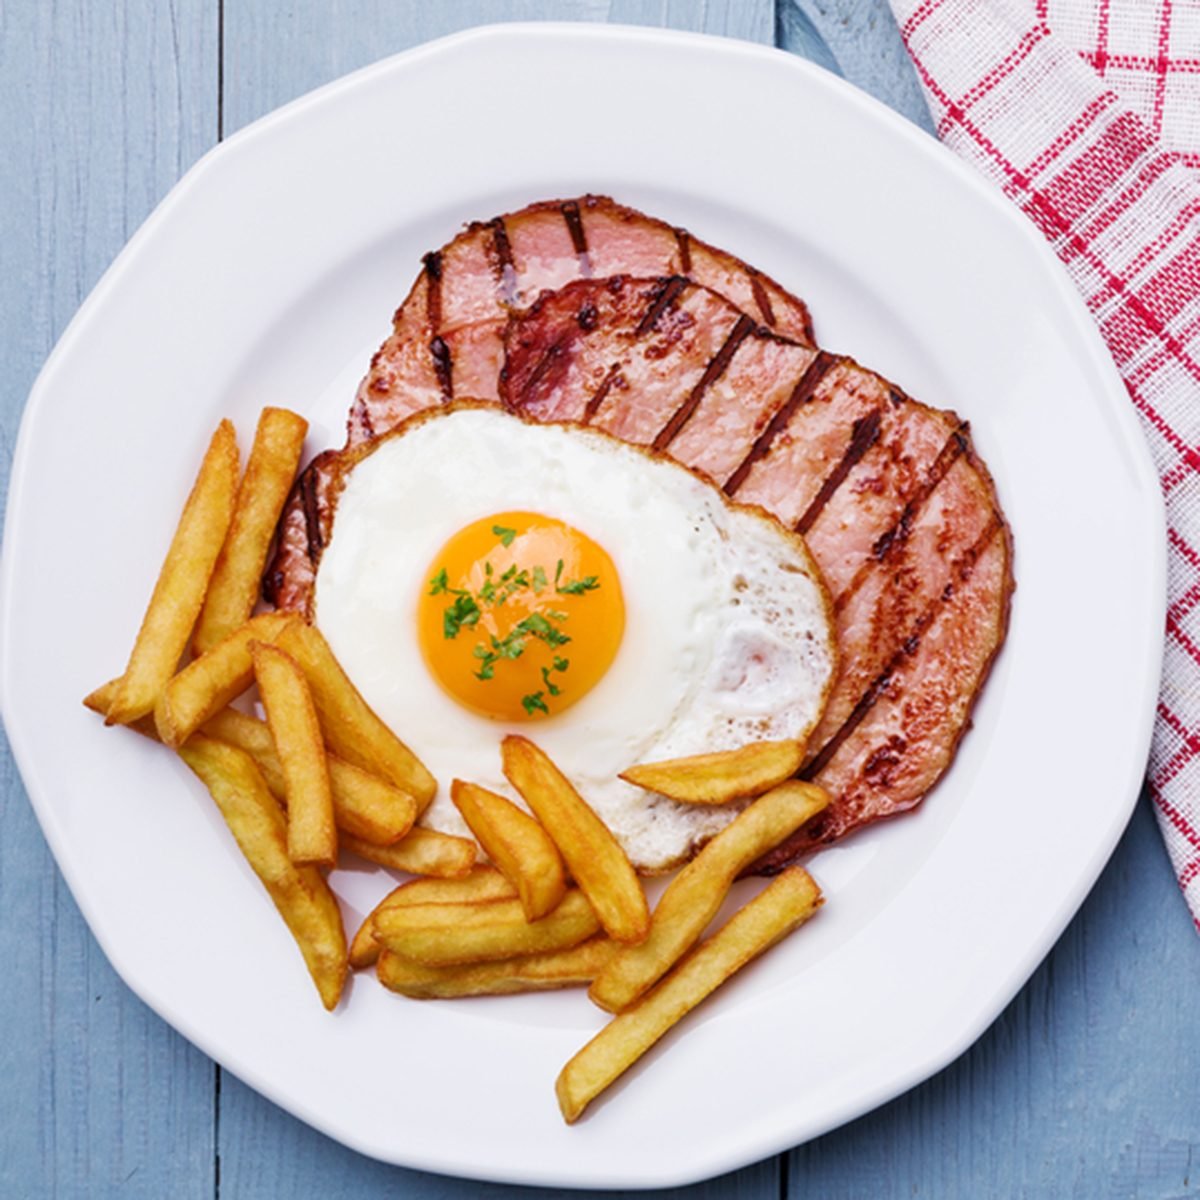 英式早餐，有烤火腿、煎蛋和炸薯条。